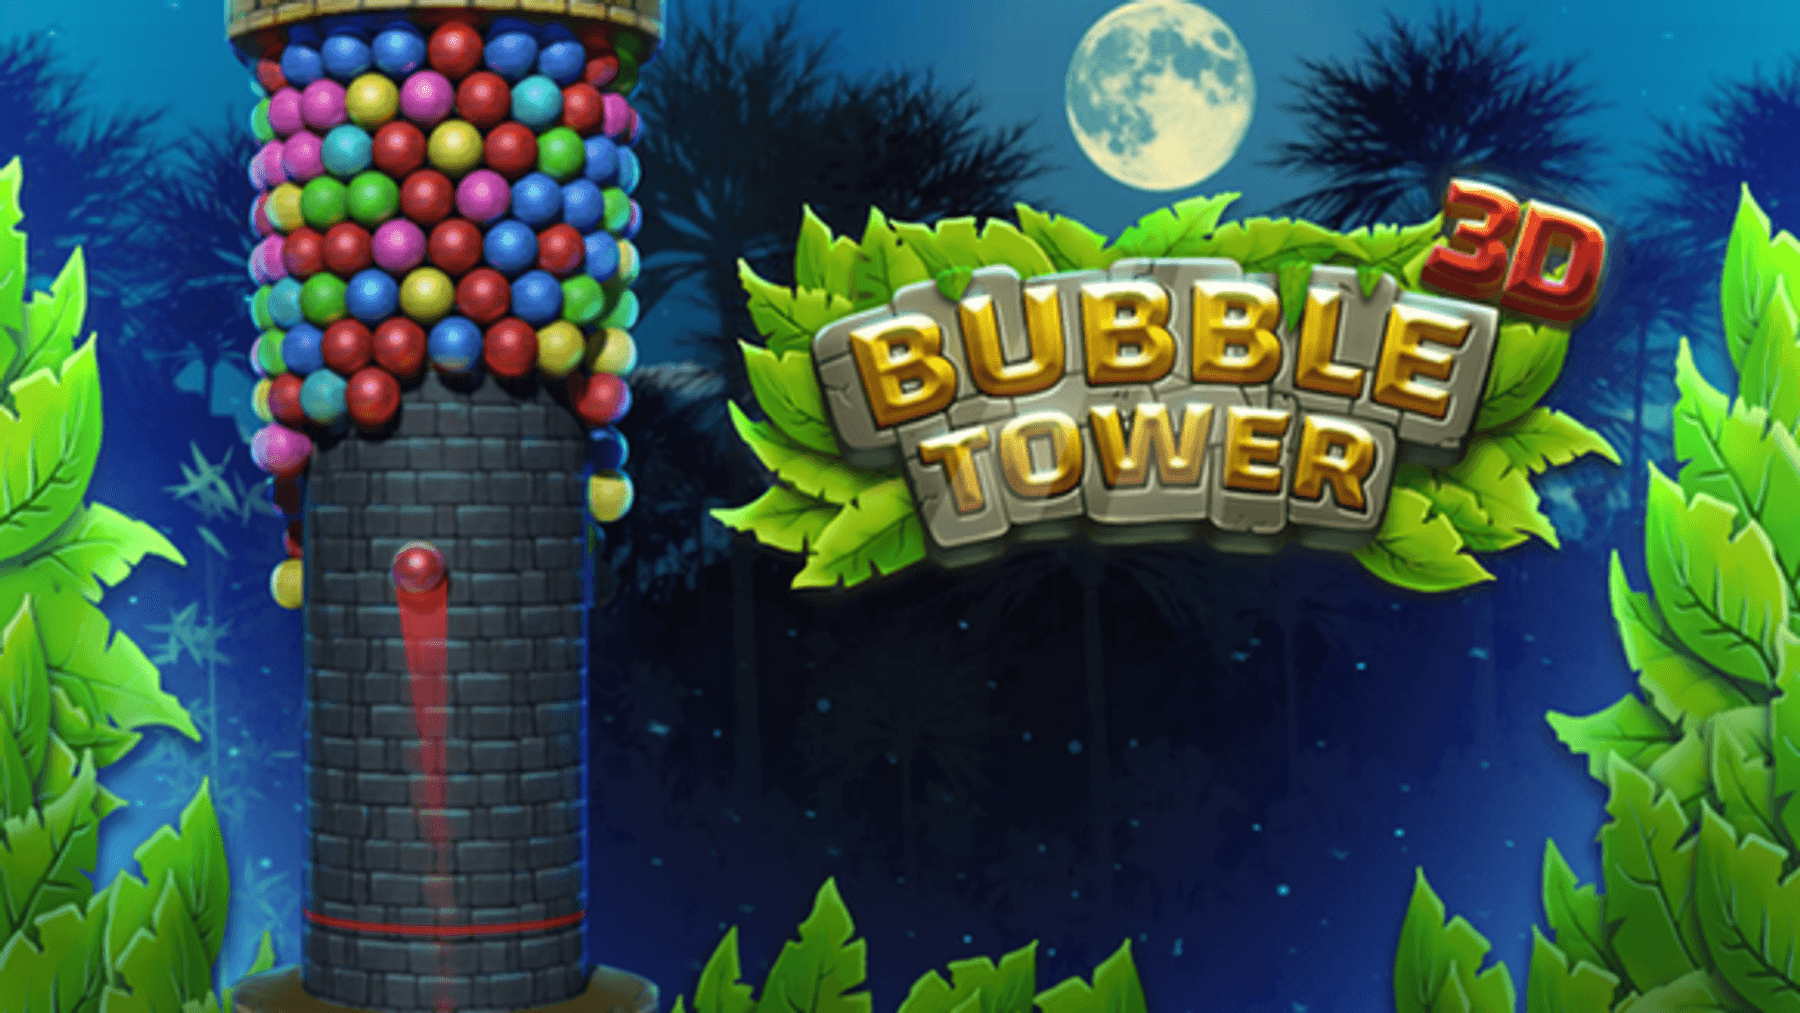 Bubble Tower 3D kostenlos online spielen bei t-online.de